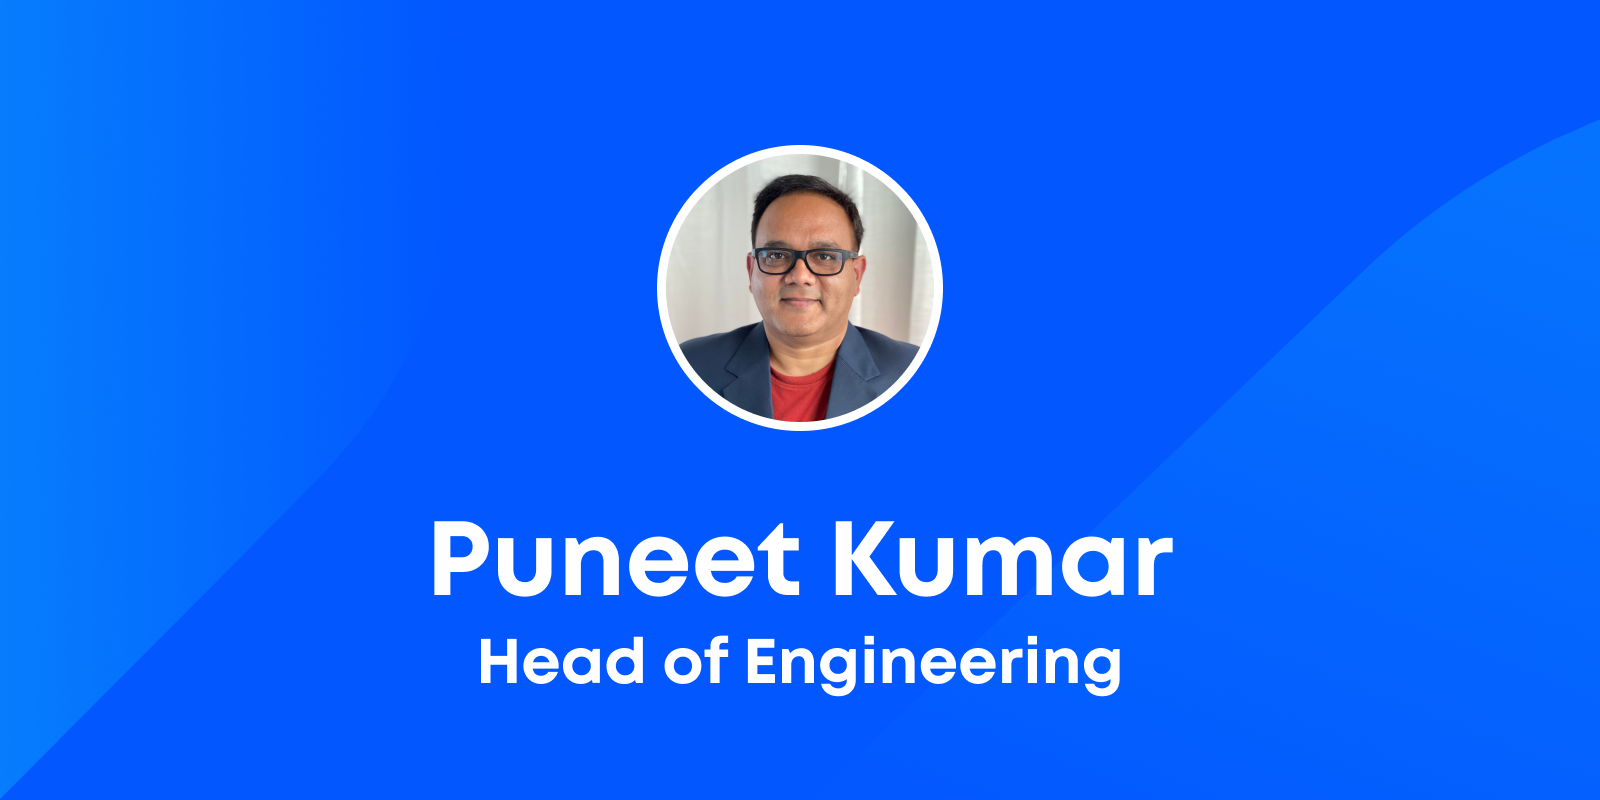 Introducing Puneet Kumar, Head of Engineering